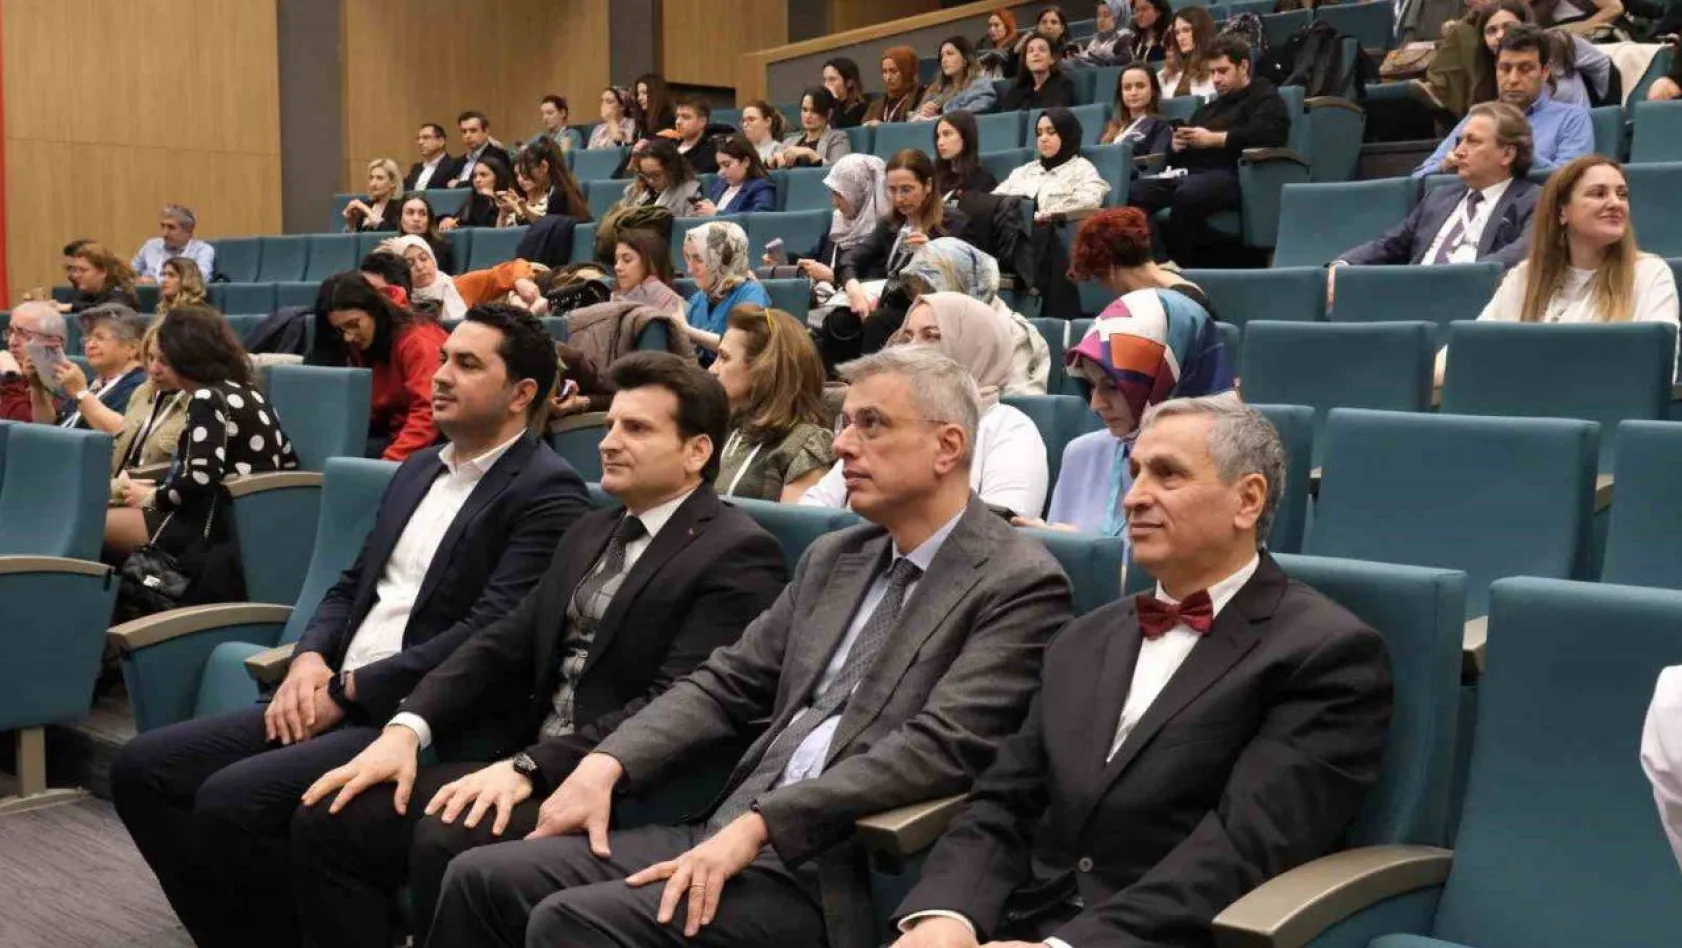 İstanbul İl Sağlık Müdürü Prof. Dr. Memişoğlu, 'Sezaryen oranımız yüksek, normal doğum tercih edilmeli'